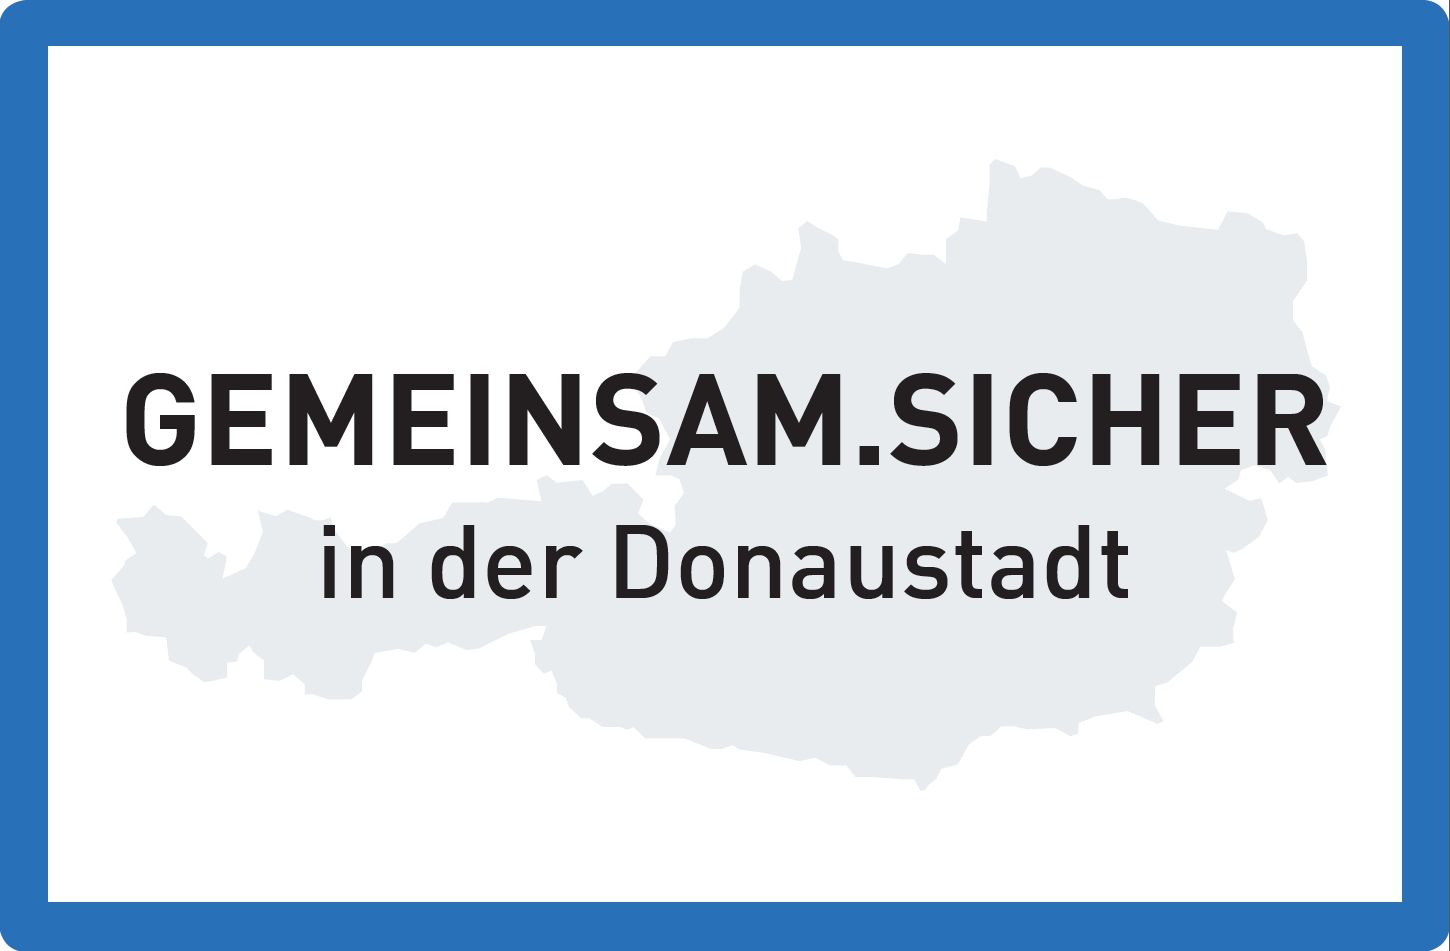 Logo der Initiative Gemeinsam.Sicher Donaustadt © Polizei Wien